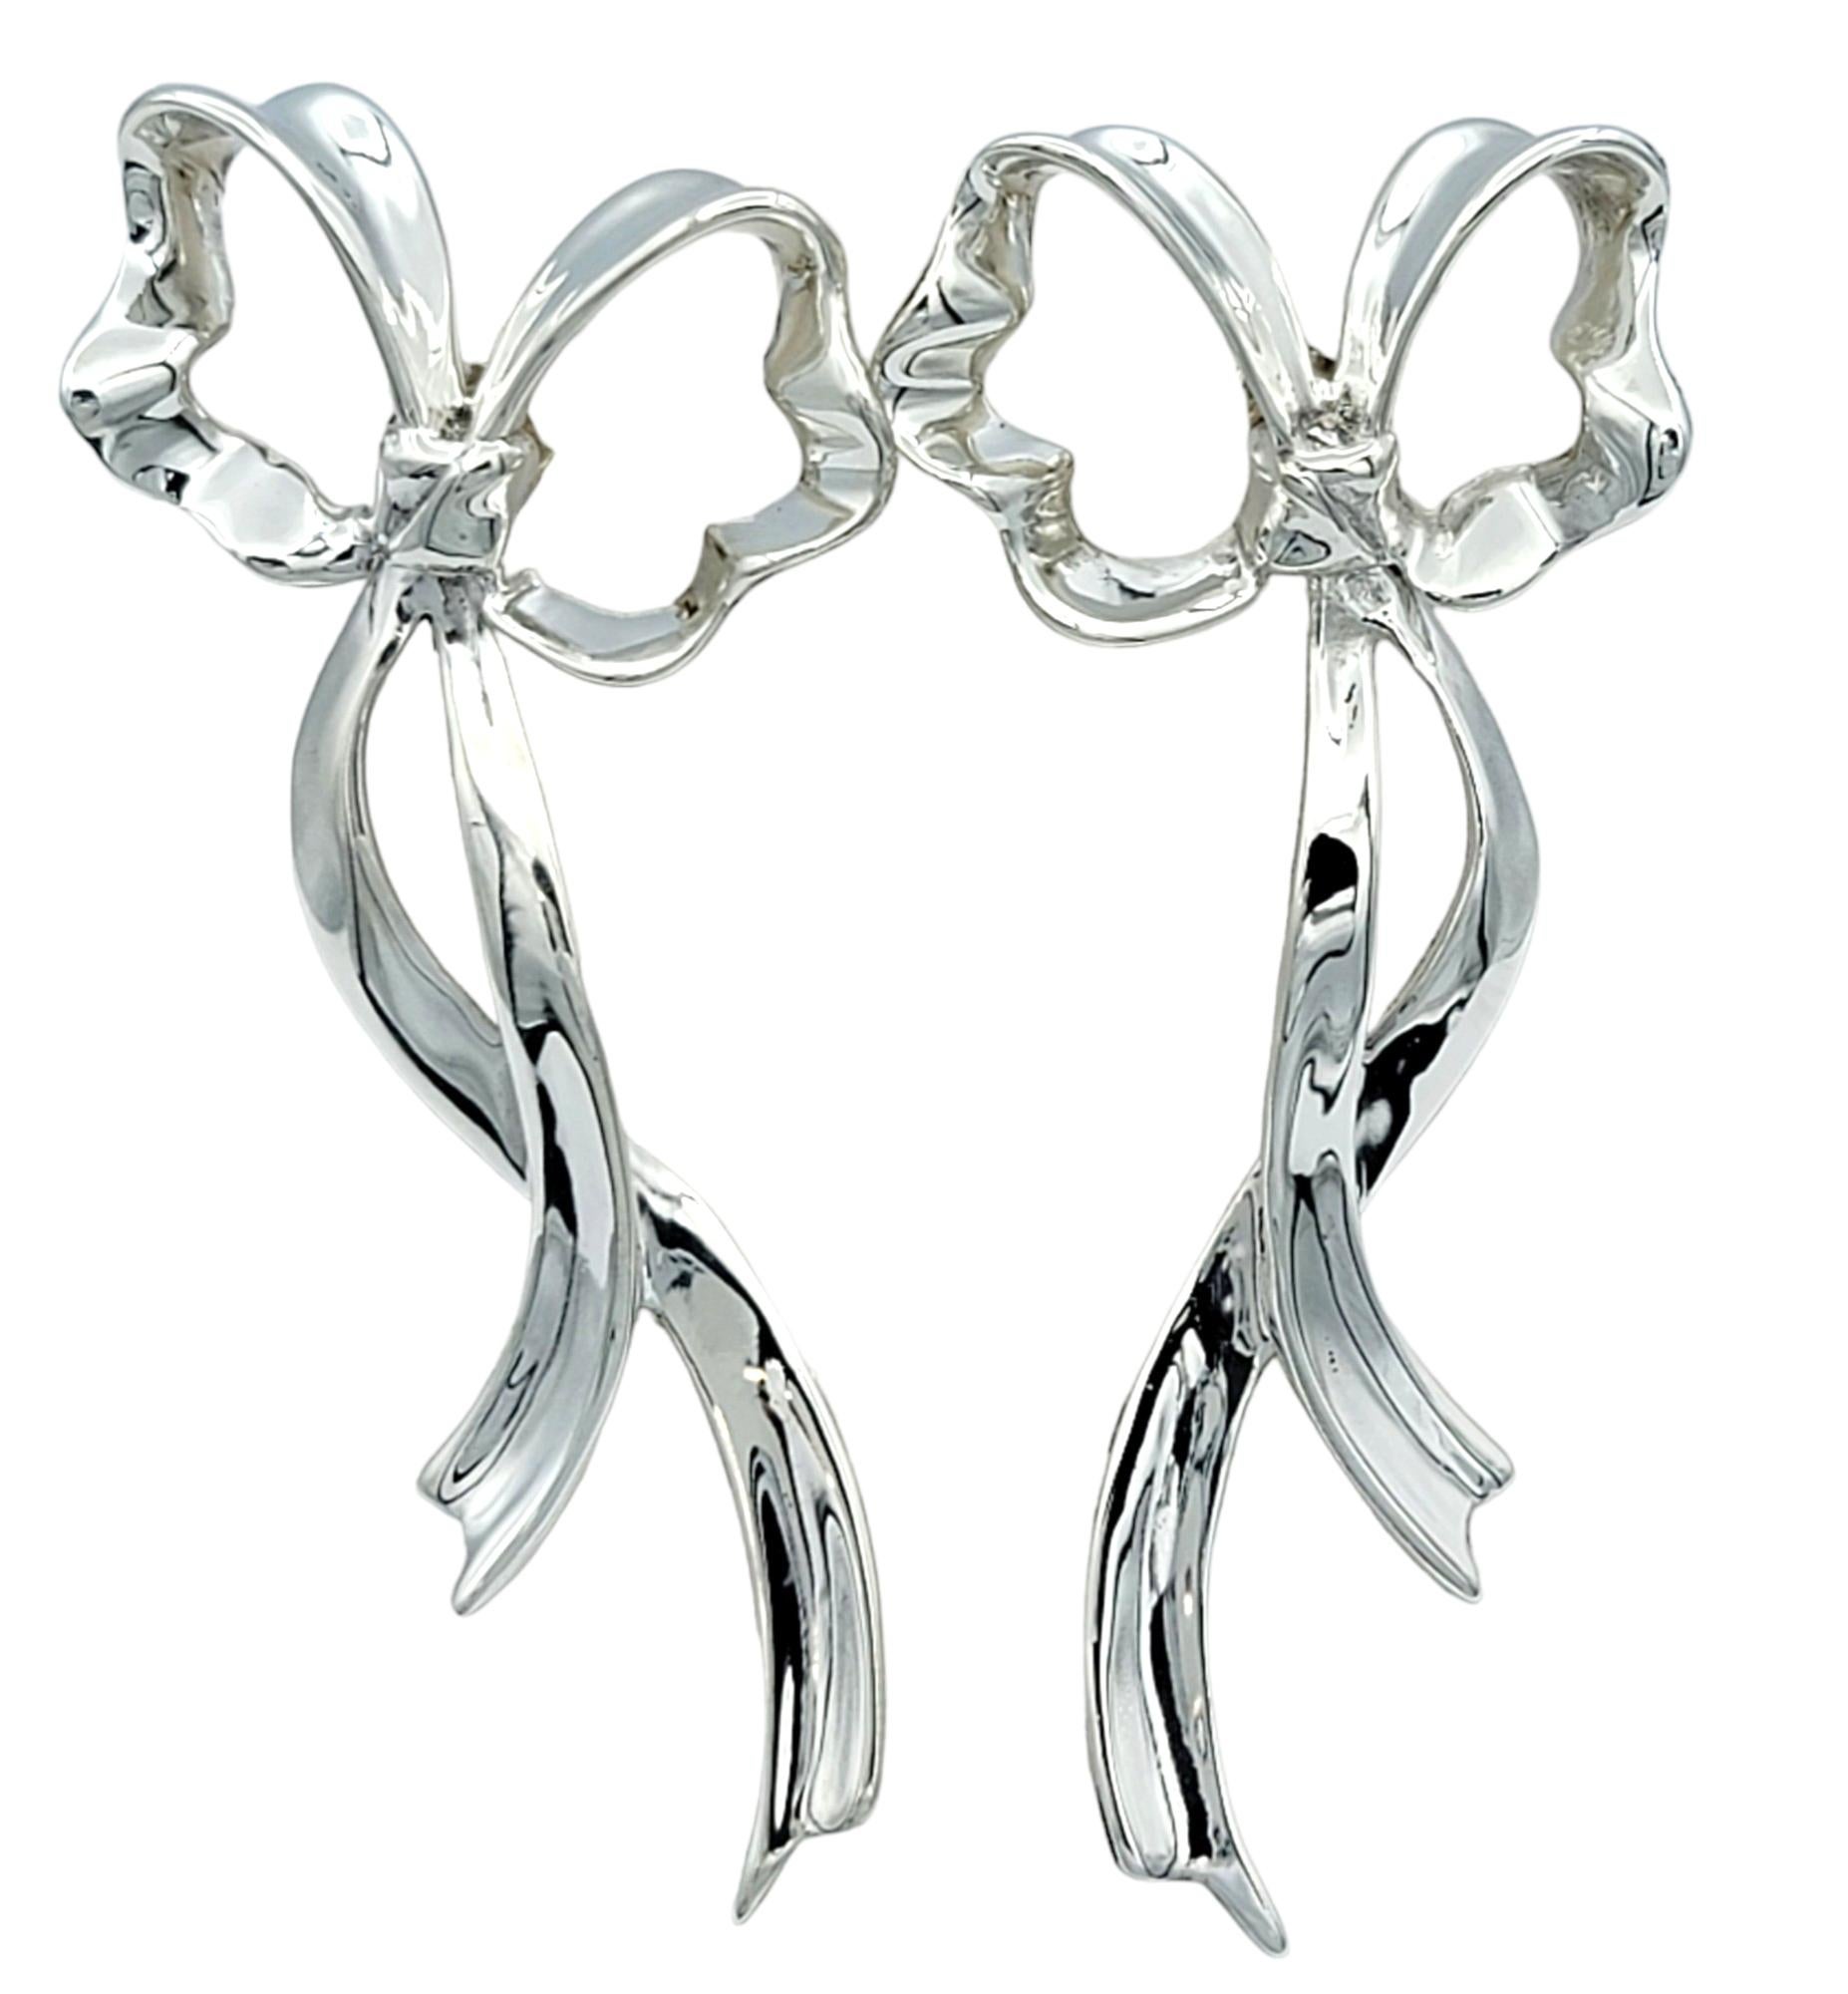 Diese Ohrringe im Stil einer Vintage-Schleife von Tiffany & Co. strahlen zeitlose Eleganz und klassische Raffinesse aus und sind ein Beweis für tadellose Handwerkskunst und beständigen Stil. Jeder Ohrring ist aus glänzendem Sterlingsilber gefertigt